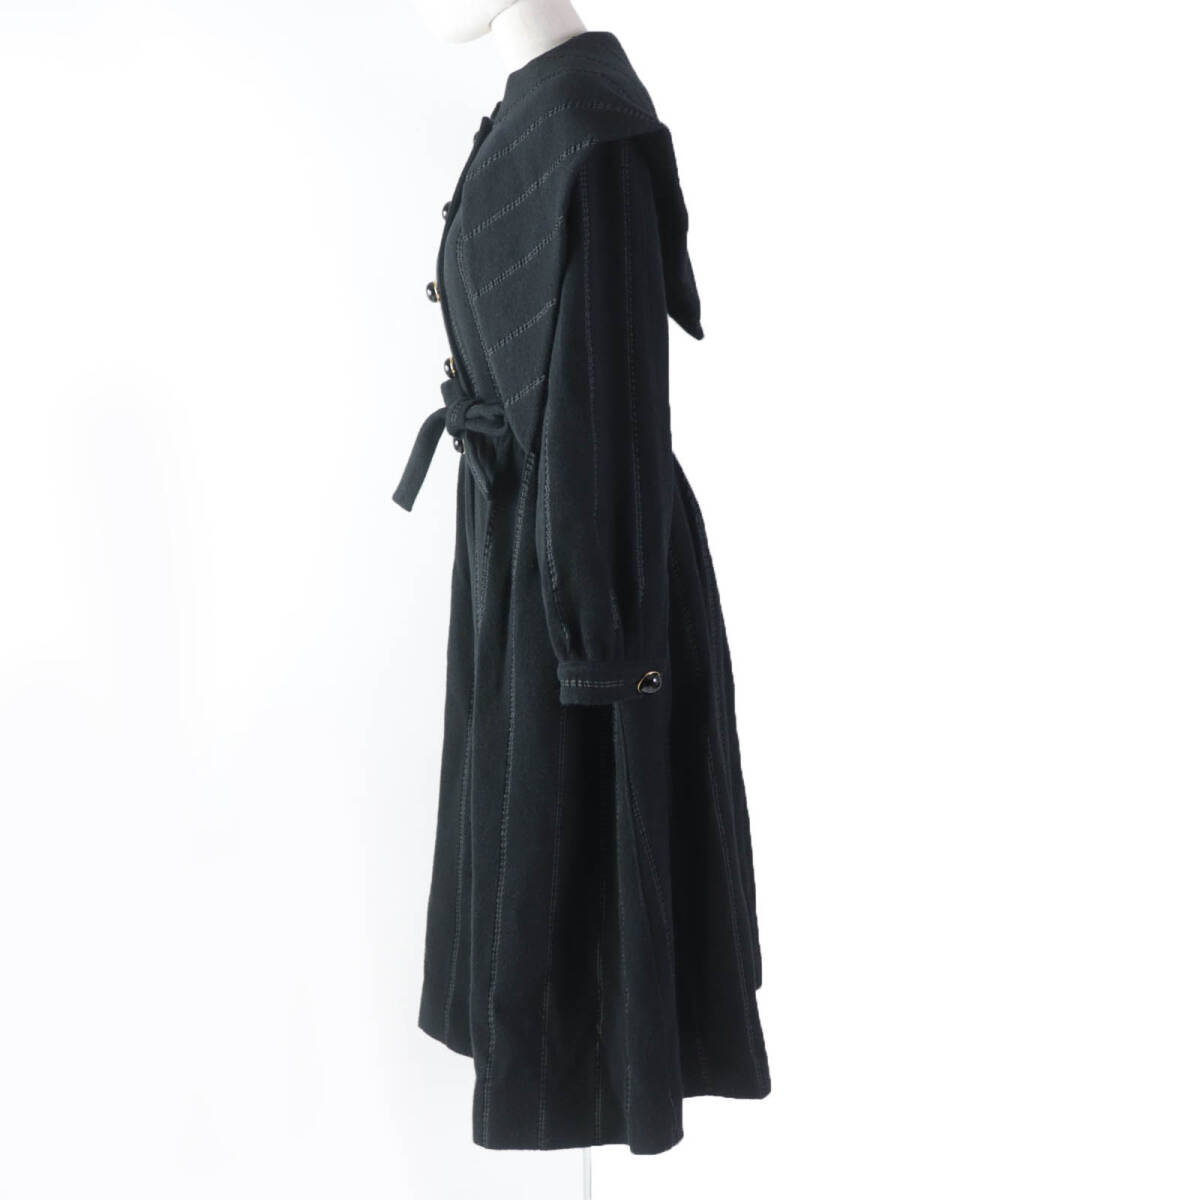  прекрасный товар *GIORGIO ARMANIjoru geo Armani 2020 год производства кашемир шелк .A линия пальто черный 40 стандартный товар женский 